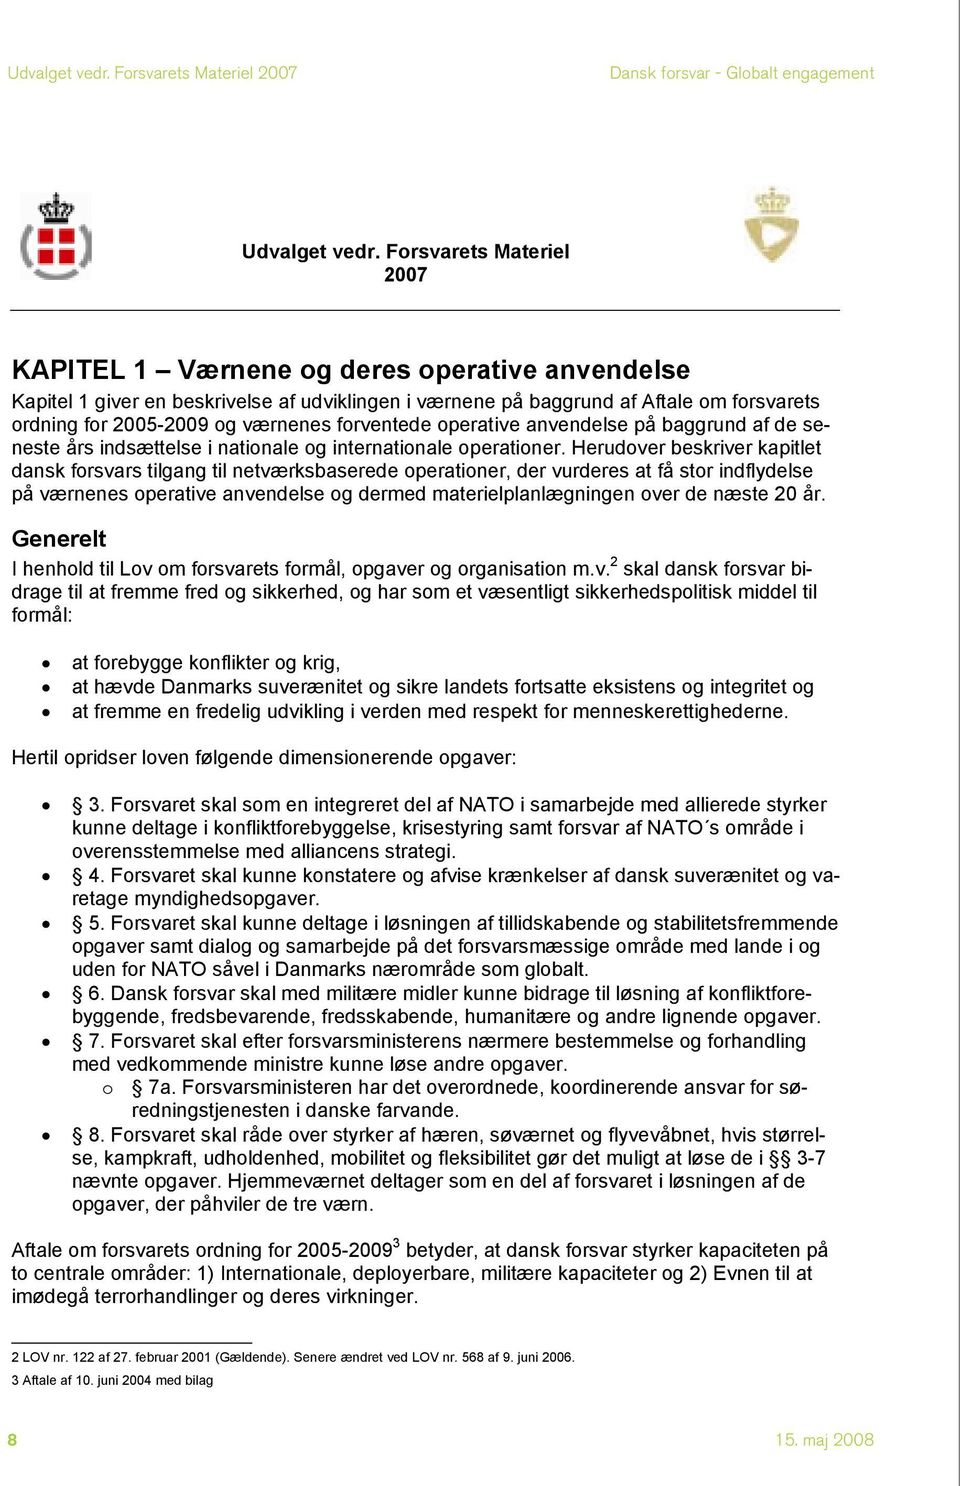 Herudover beskriver kapitlet dansk forsvars tilgang til netværksbaserede operationer, der vurderes at få stor indflydelse på værnenes operative anvendelse og dermed materielplanlægningen over de